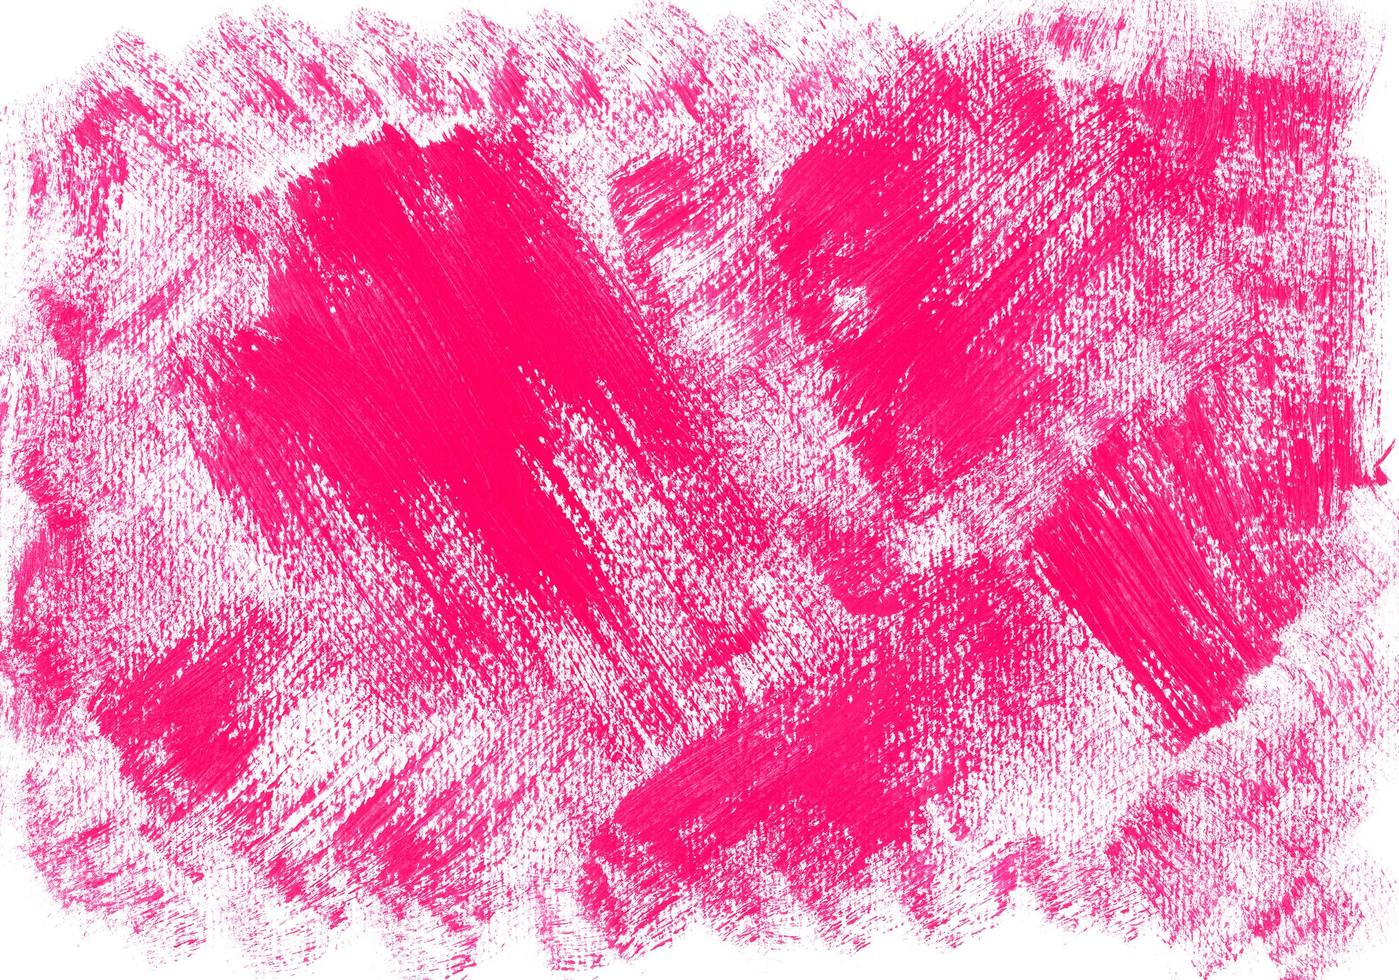 kaotisk stor stroke av rosa måla på texturerad horisontell vit duk. abstrakt akryl, gouache eller tempera rosa måla textur. konstnärlig bakgrund med plats för text. foto